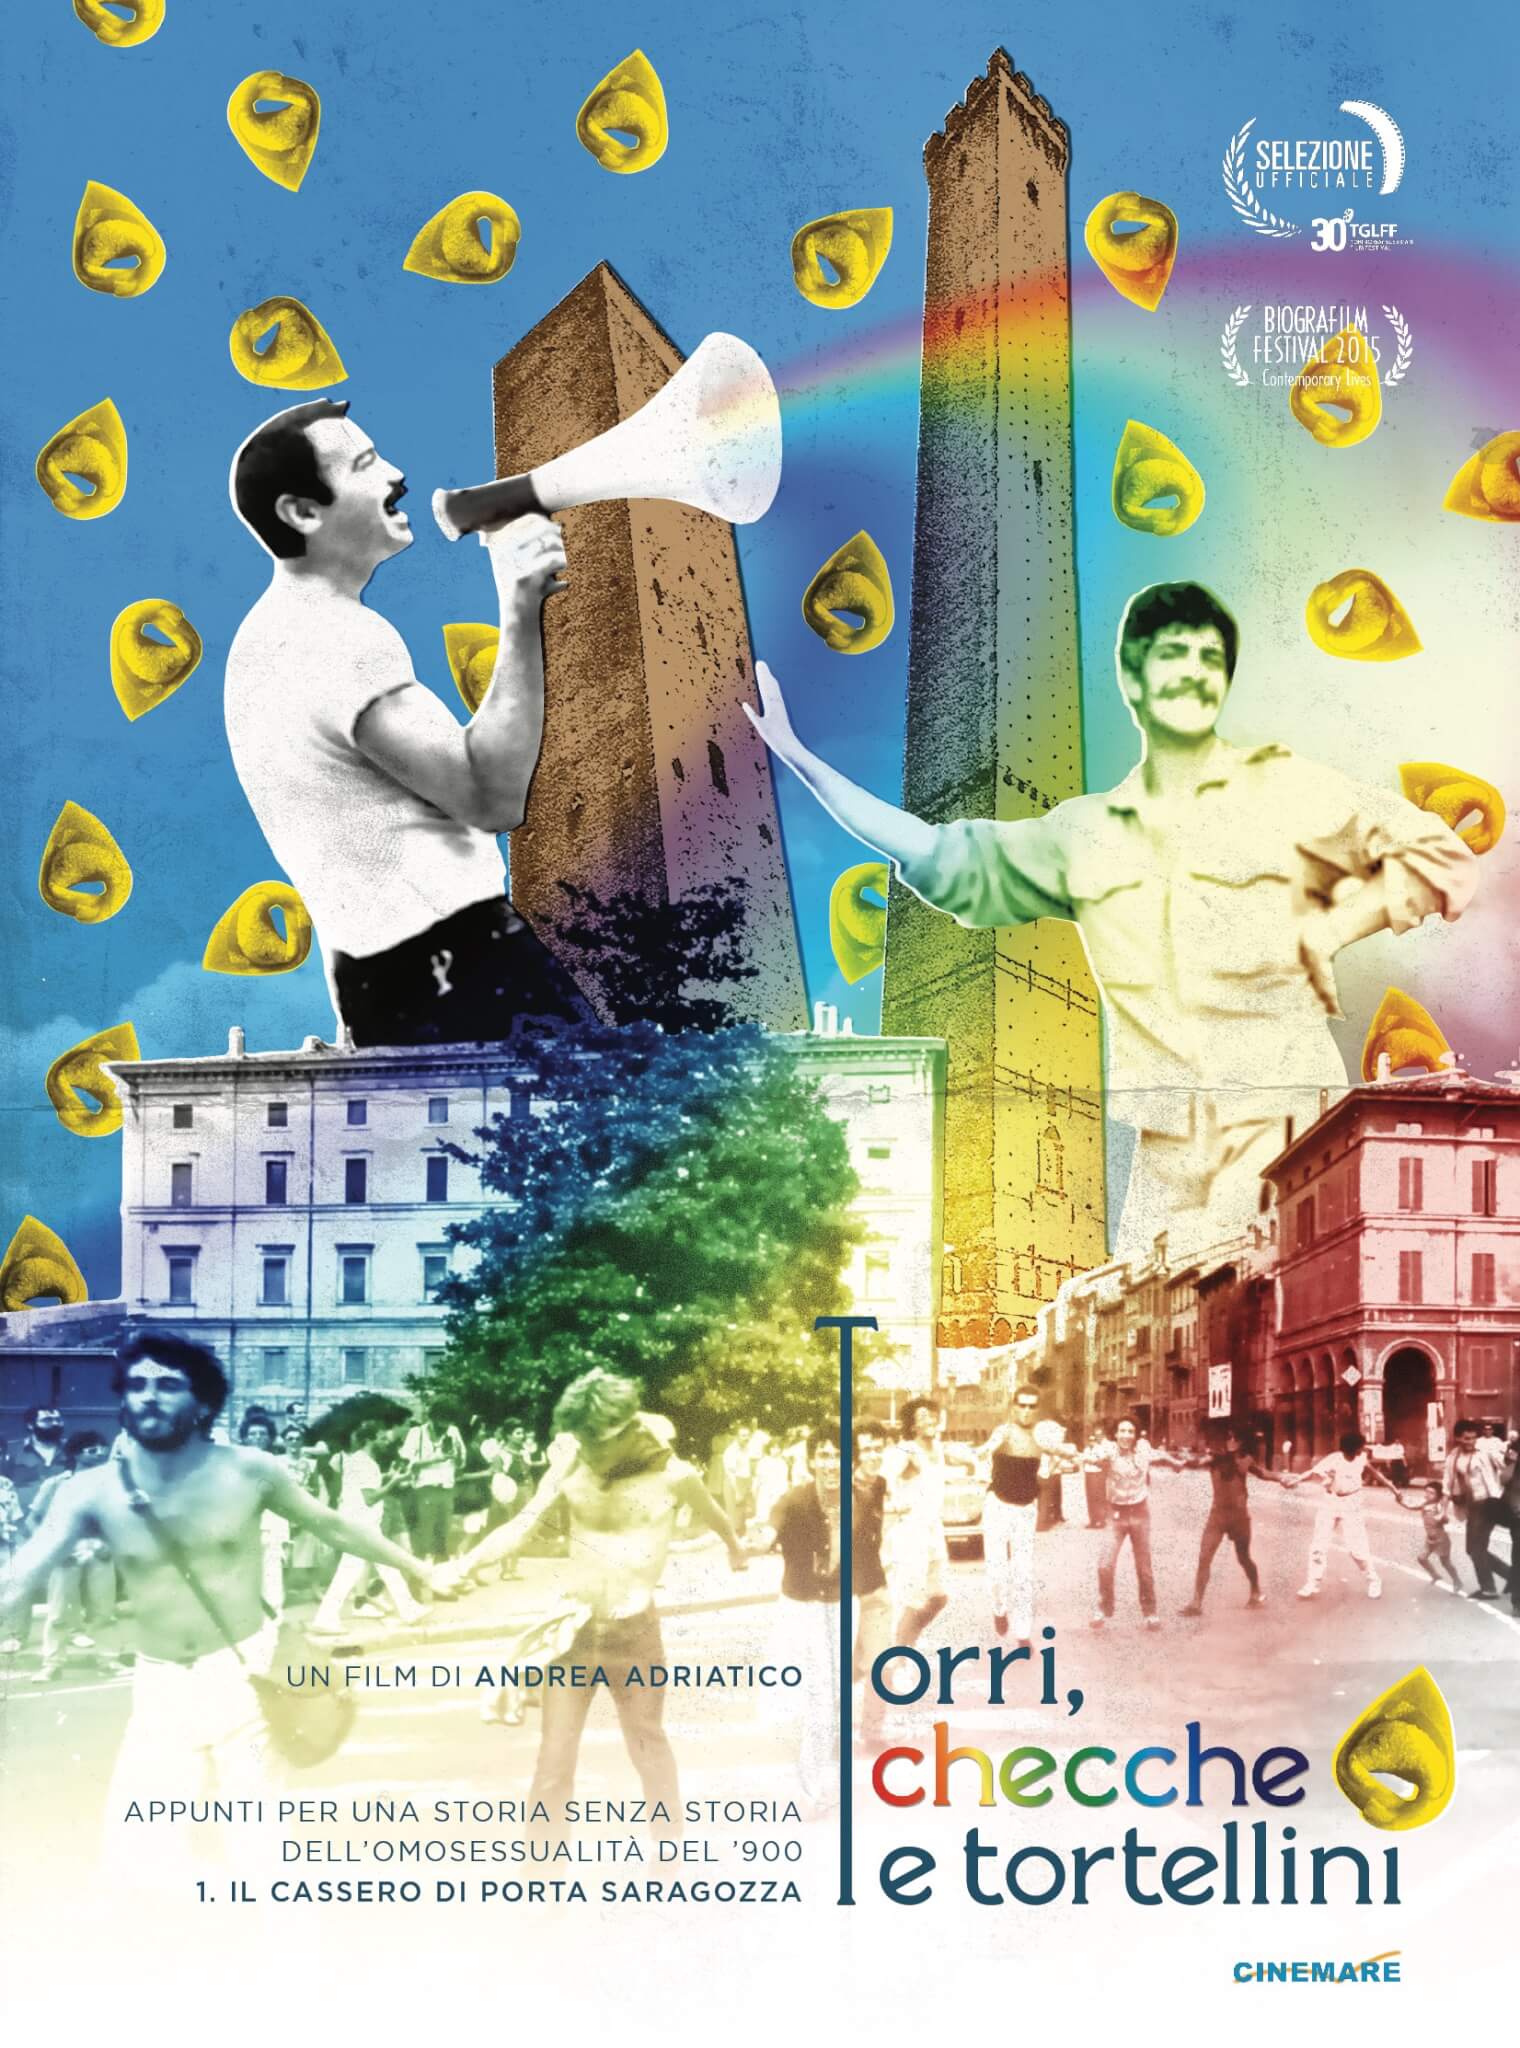 Guida TV tra film e serie LGBT, 26 marzo 2020: vi consigliamo Torri, Checche e Tortellini - torri checche tortellini - Gay.it